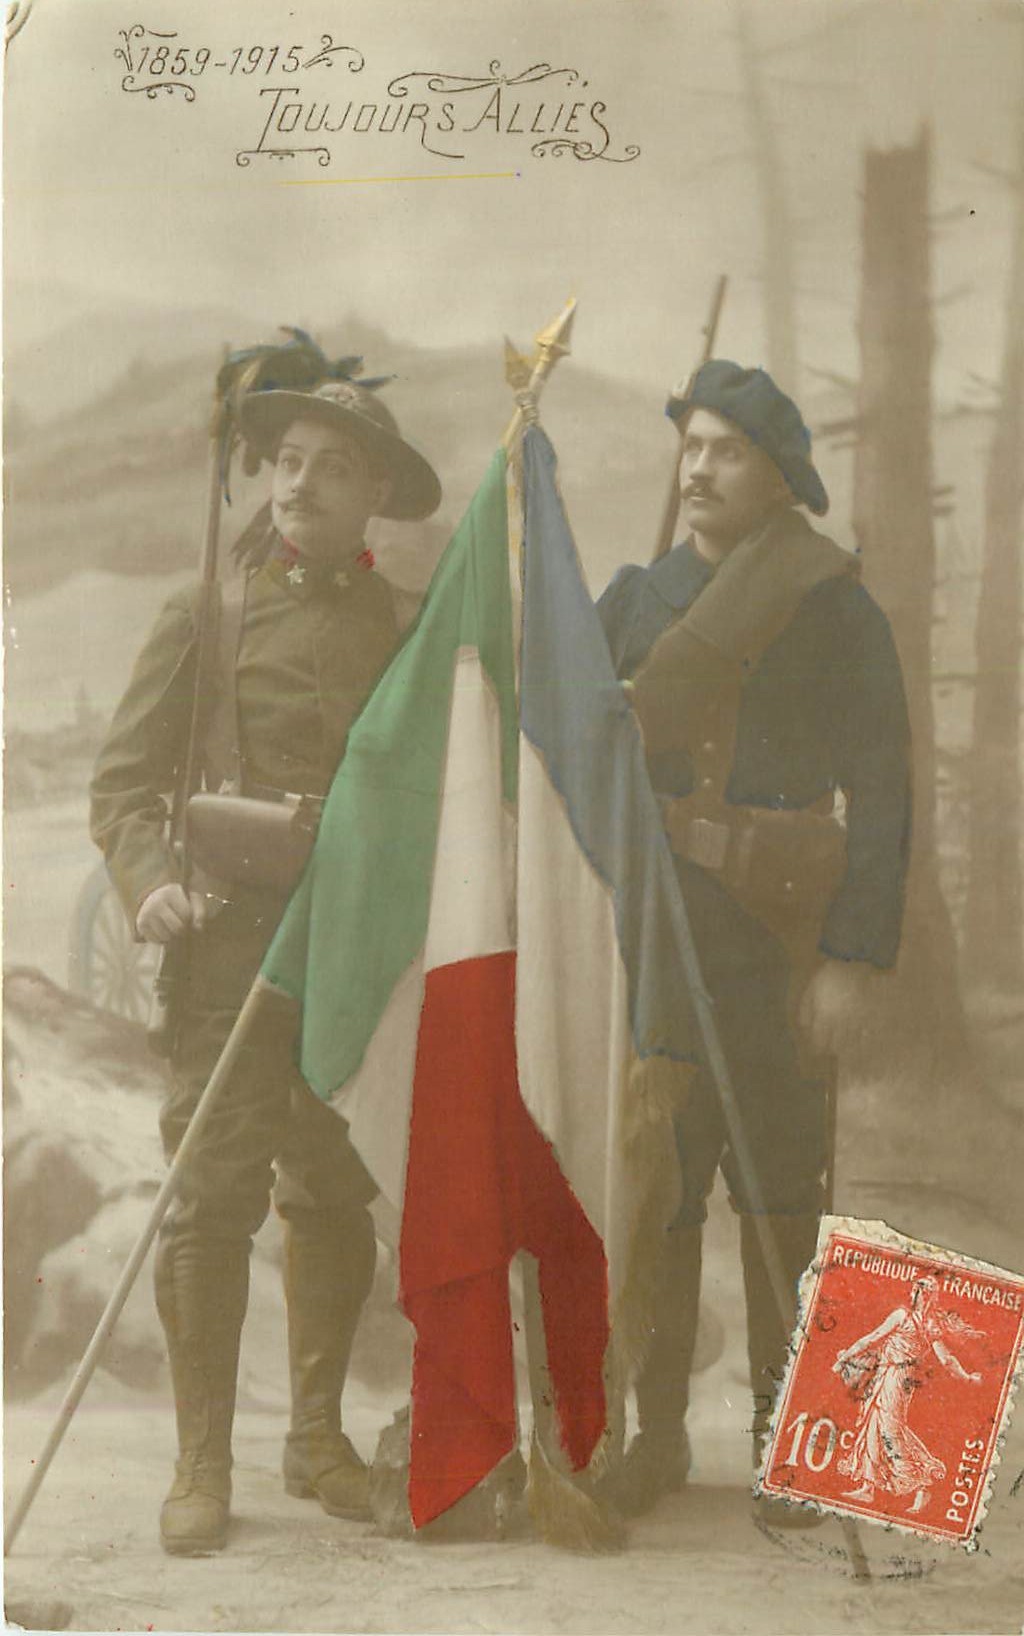 WW GUERRE 1914-18. La France et l'Italie toujours alliés 1915